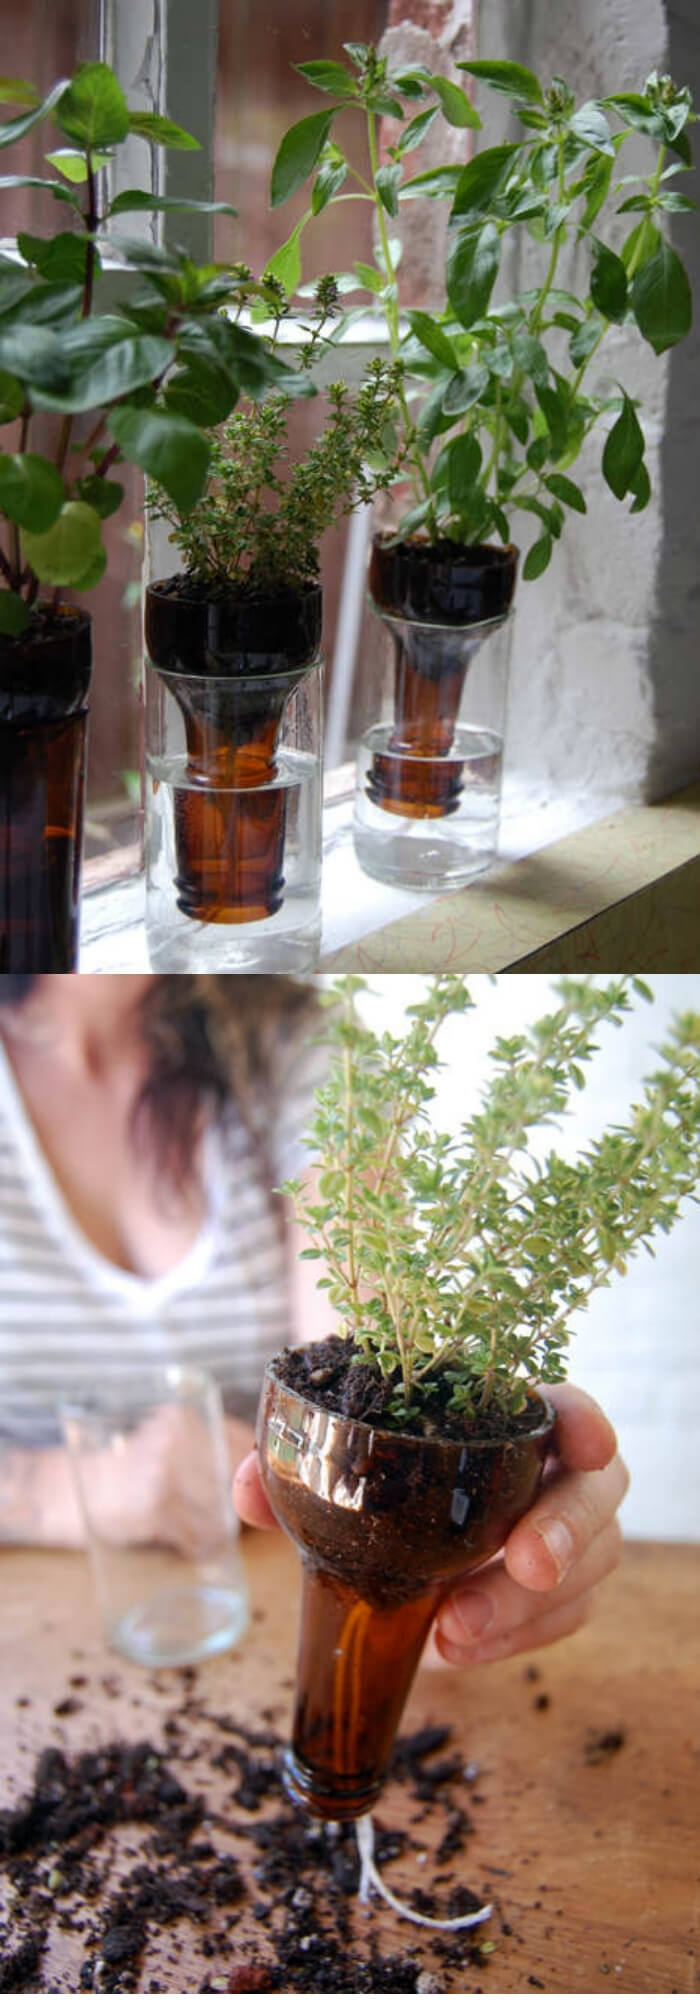 Self watering for herbs | Best DIY Self-Watering System Ideas